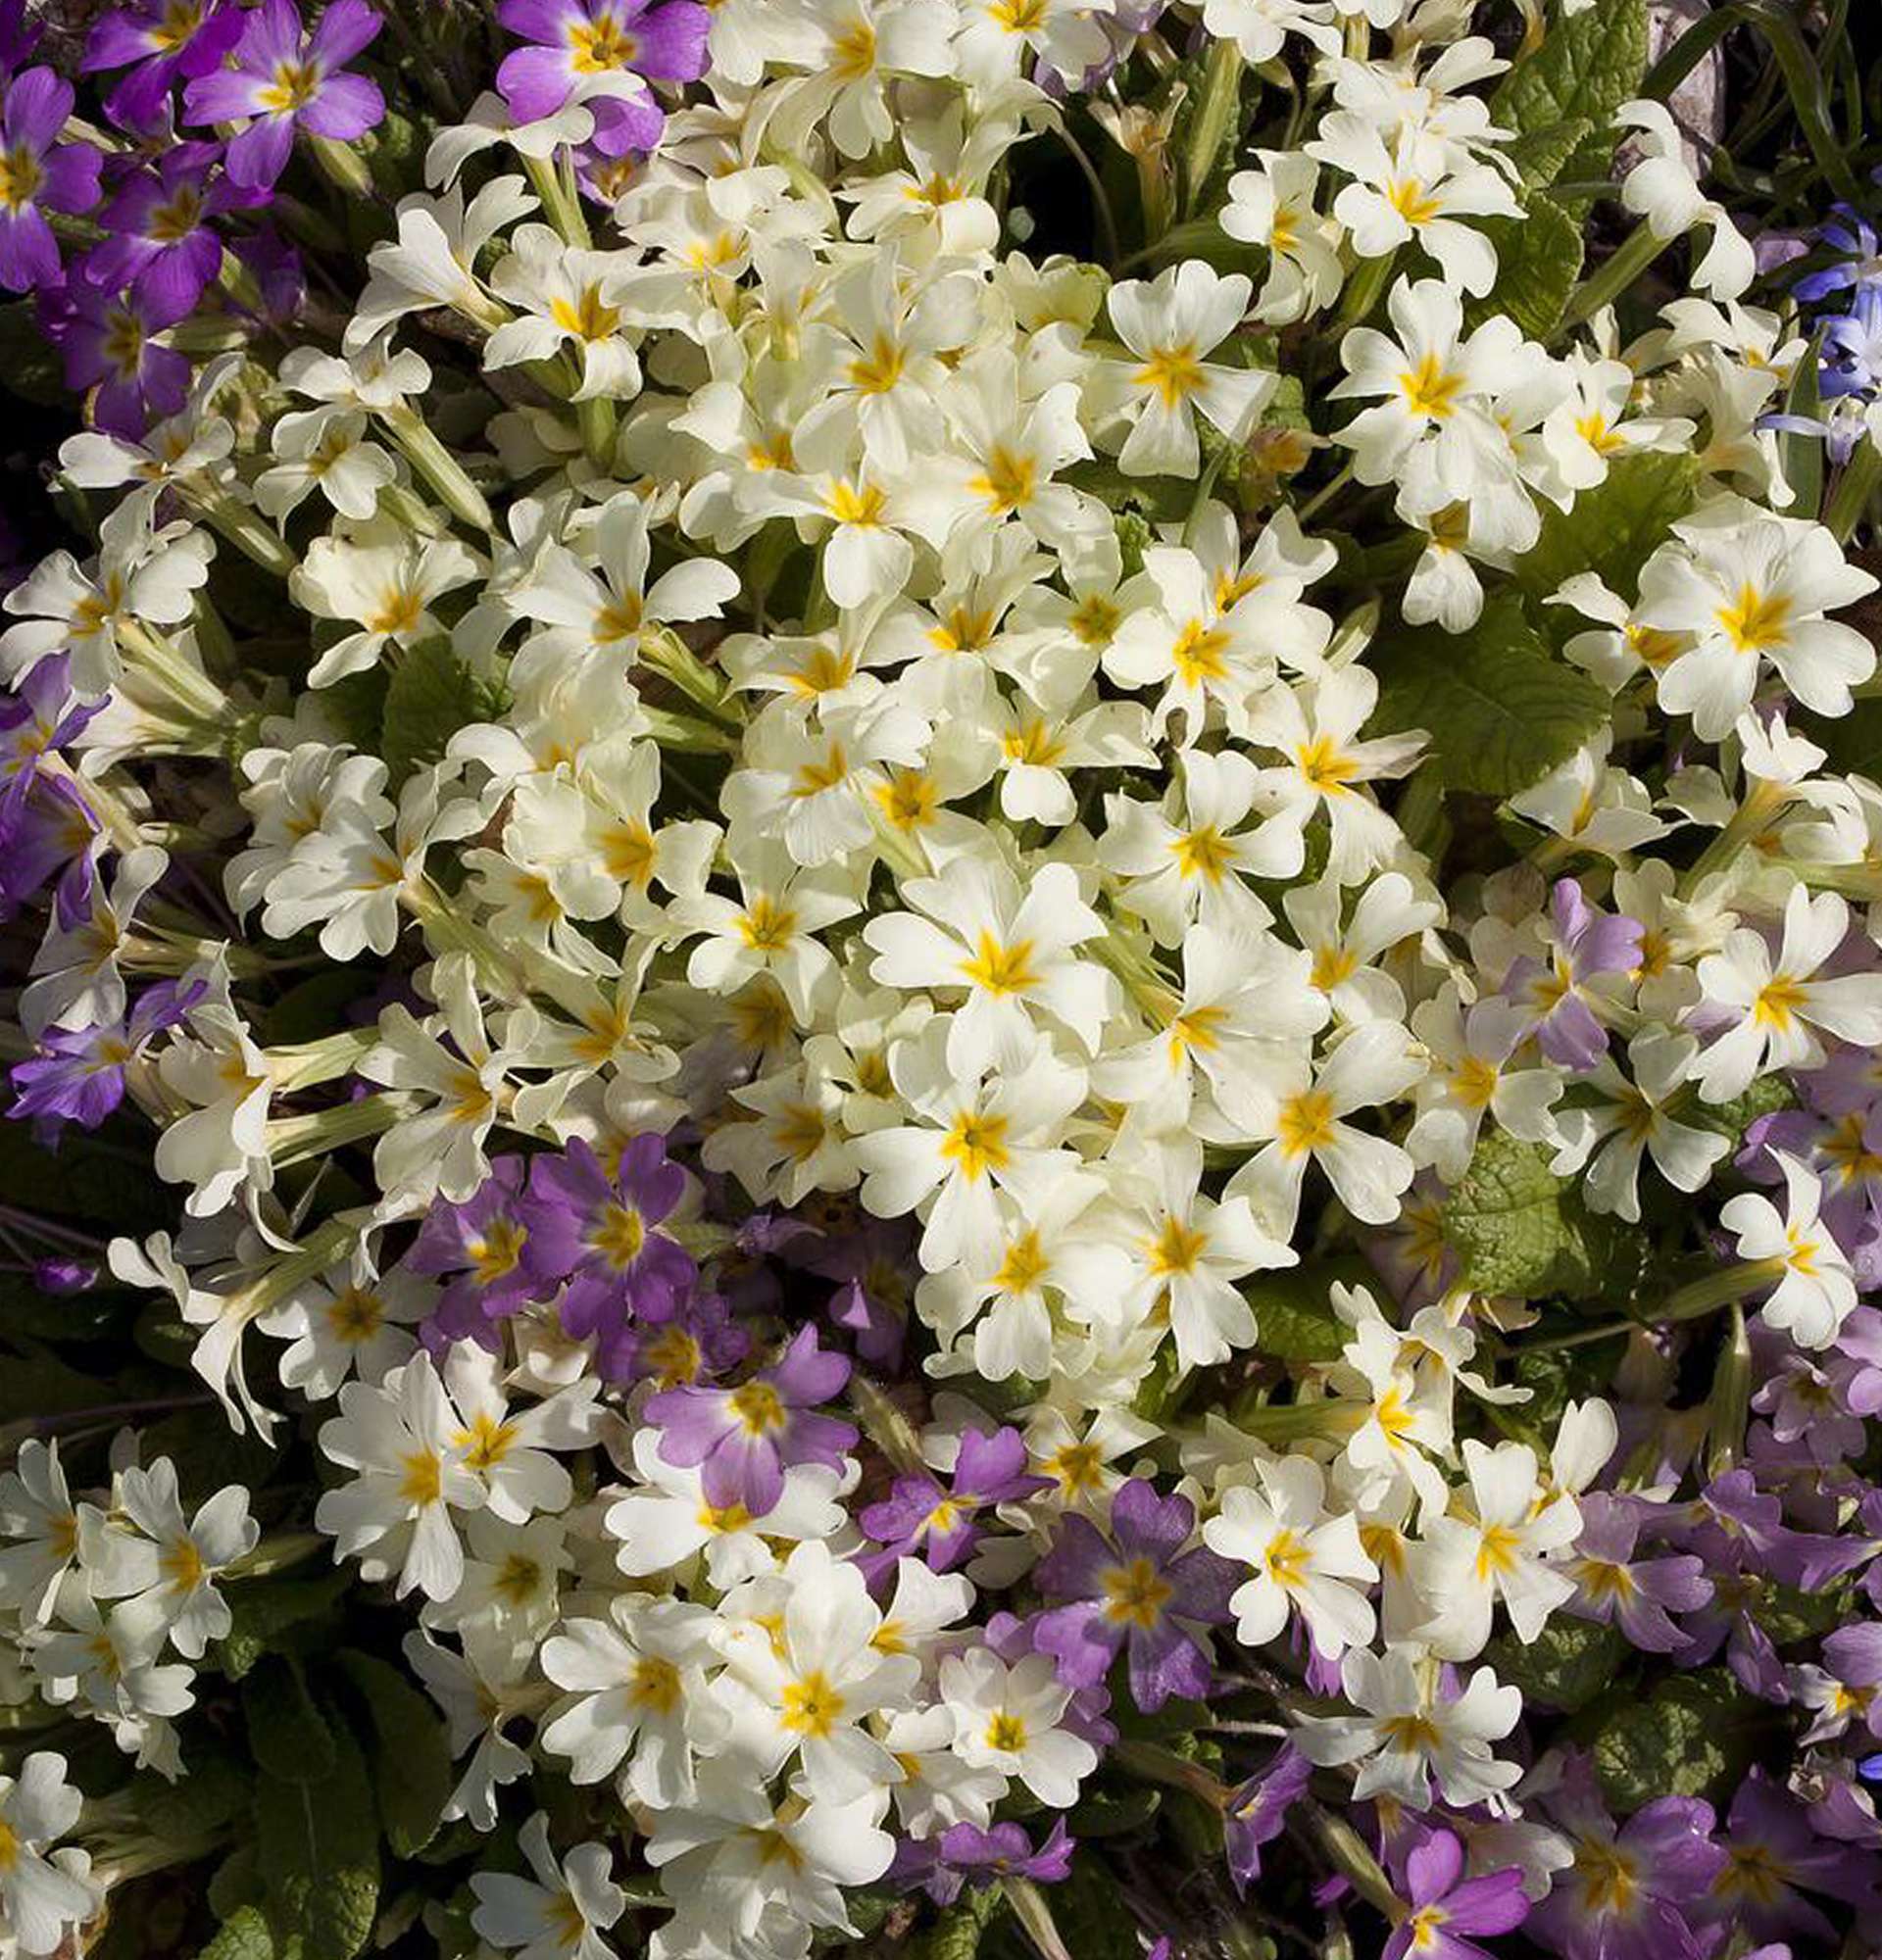 garden densely flowering flowers photo - keys